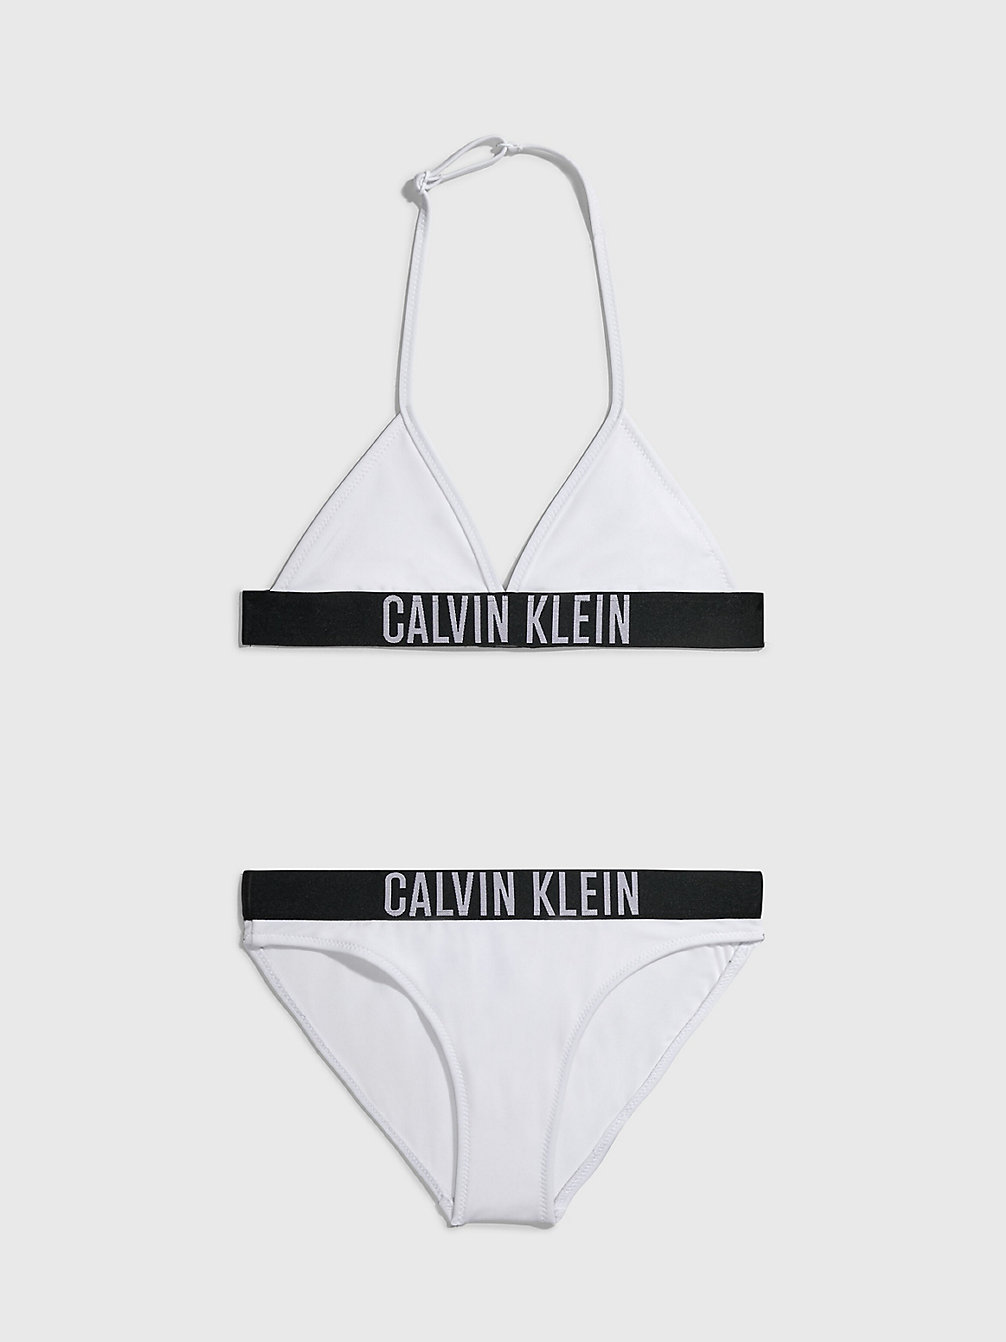 PVH CLASSIC WHITE Triangelbikini Voor Meisjes - Intense Power undefined girls Calvin Klein